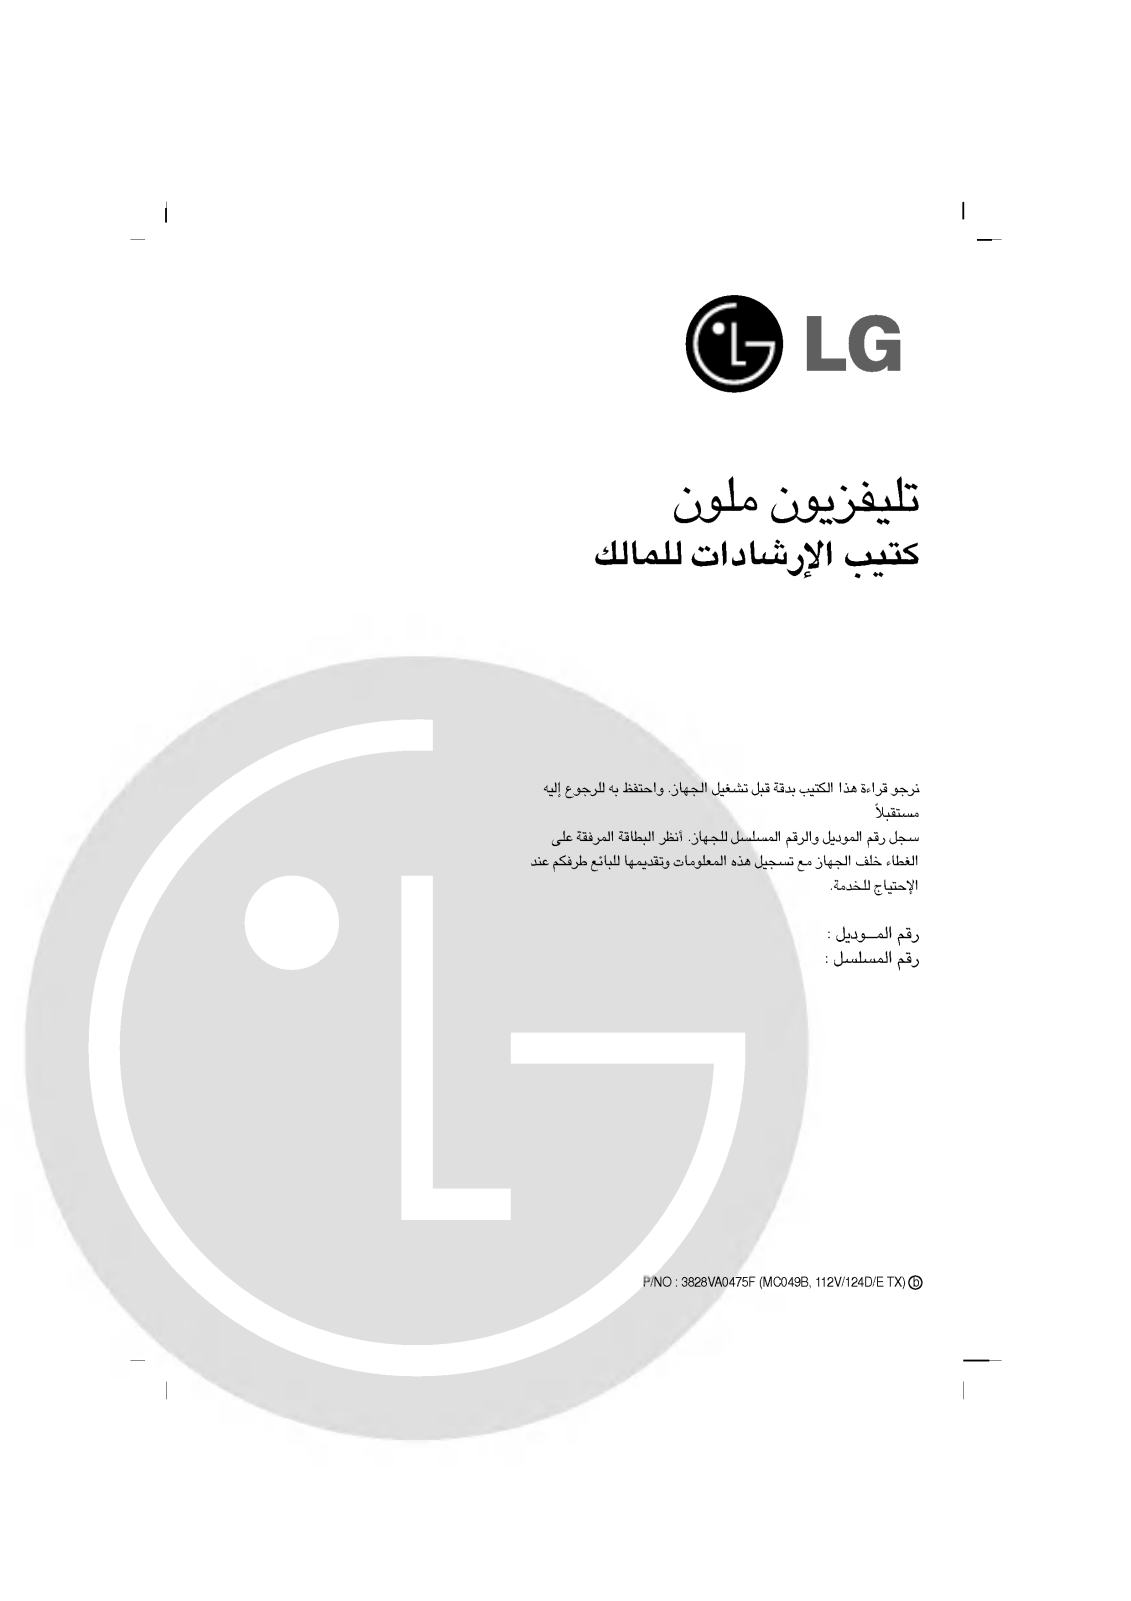 LG CT-20F65M Owner's Manual